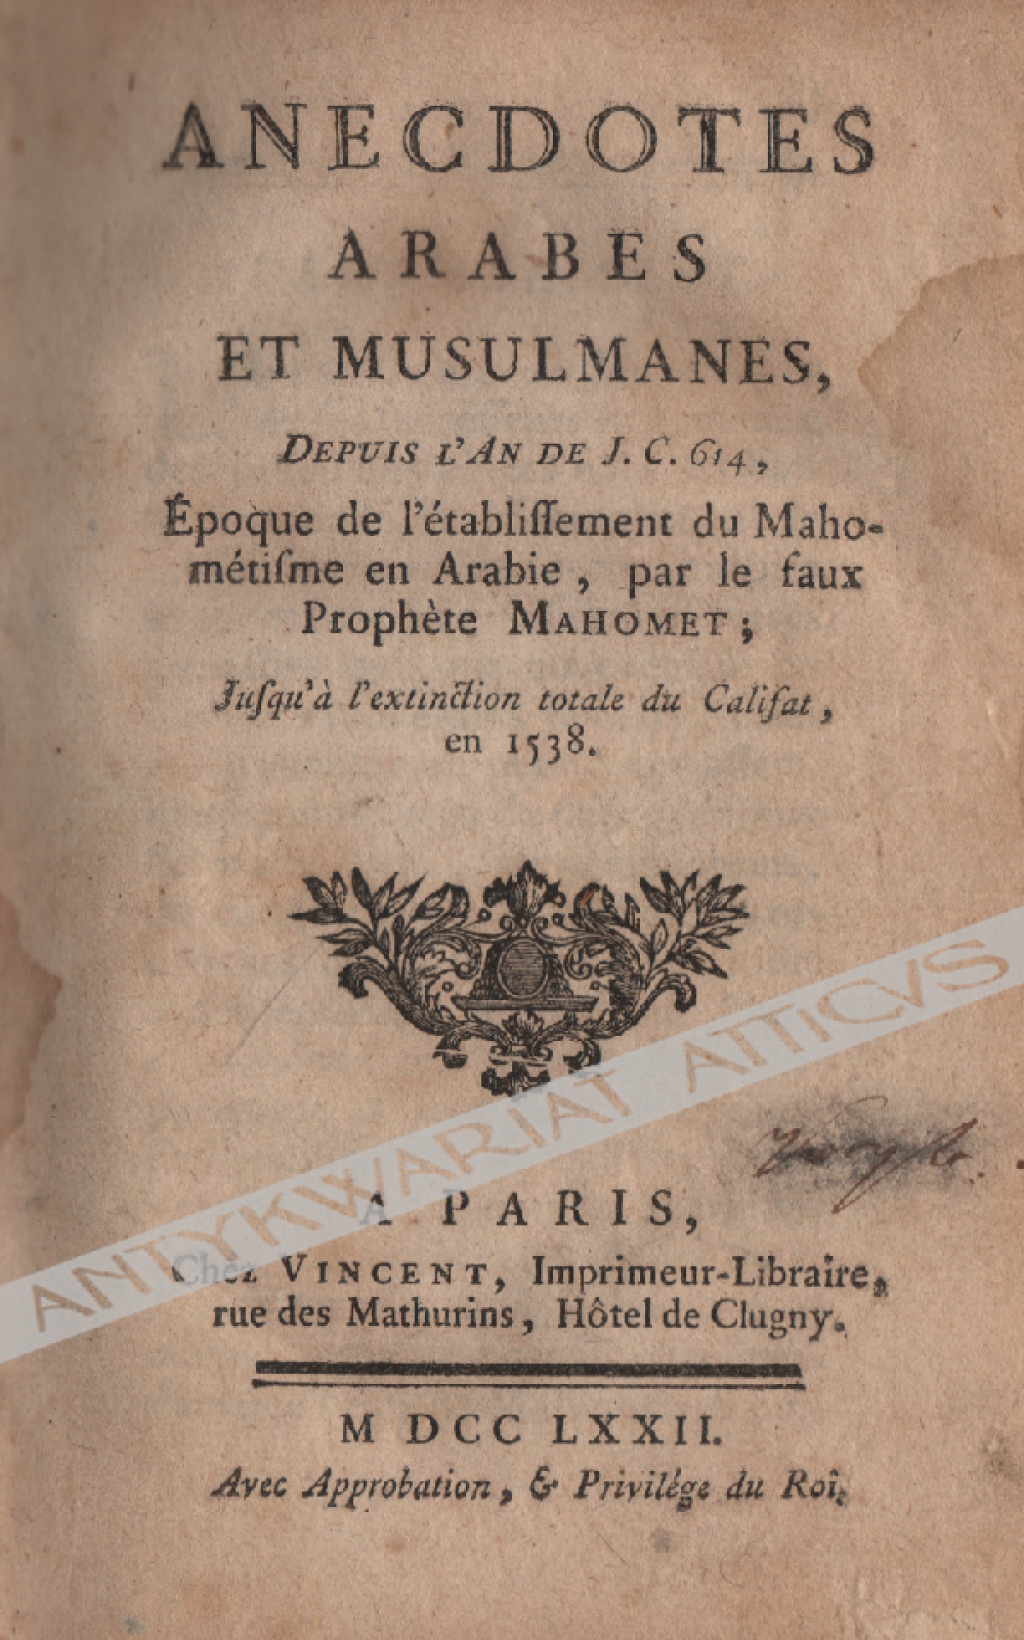 Anecdotes Arabes et Musulmanes, depuis l'an de J. C. 614, époque de l'établissement du Mahométisme en Arabie, par le faux prophète Mahomet; jusqu'à l'extinction totale du Califat, en 1538.